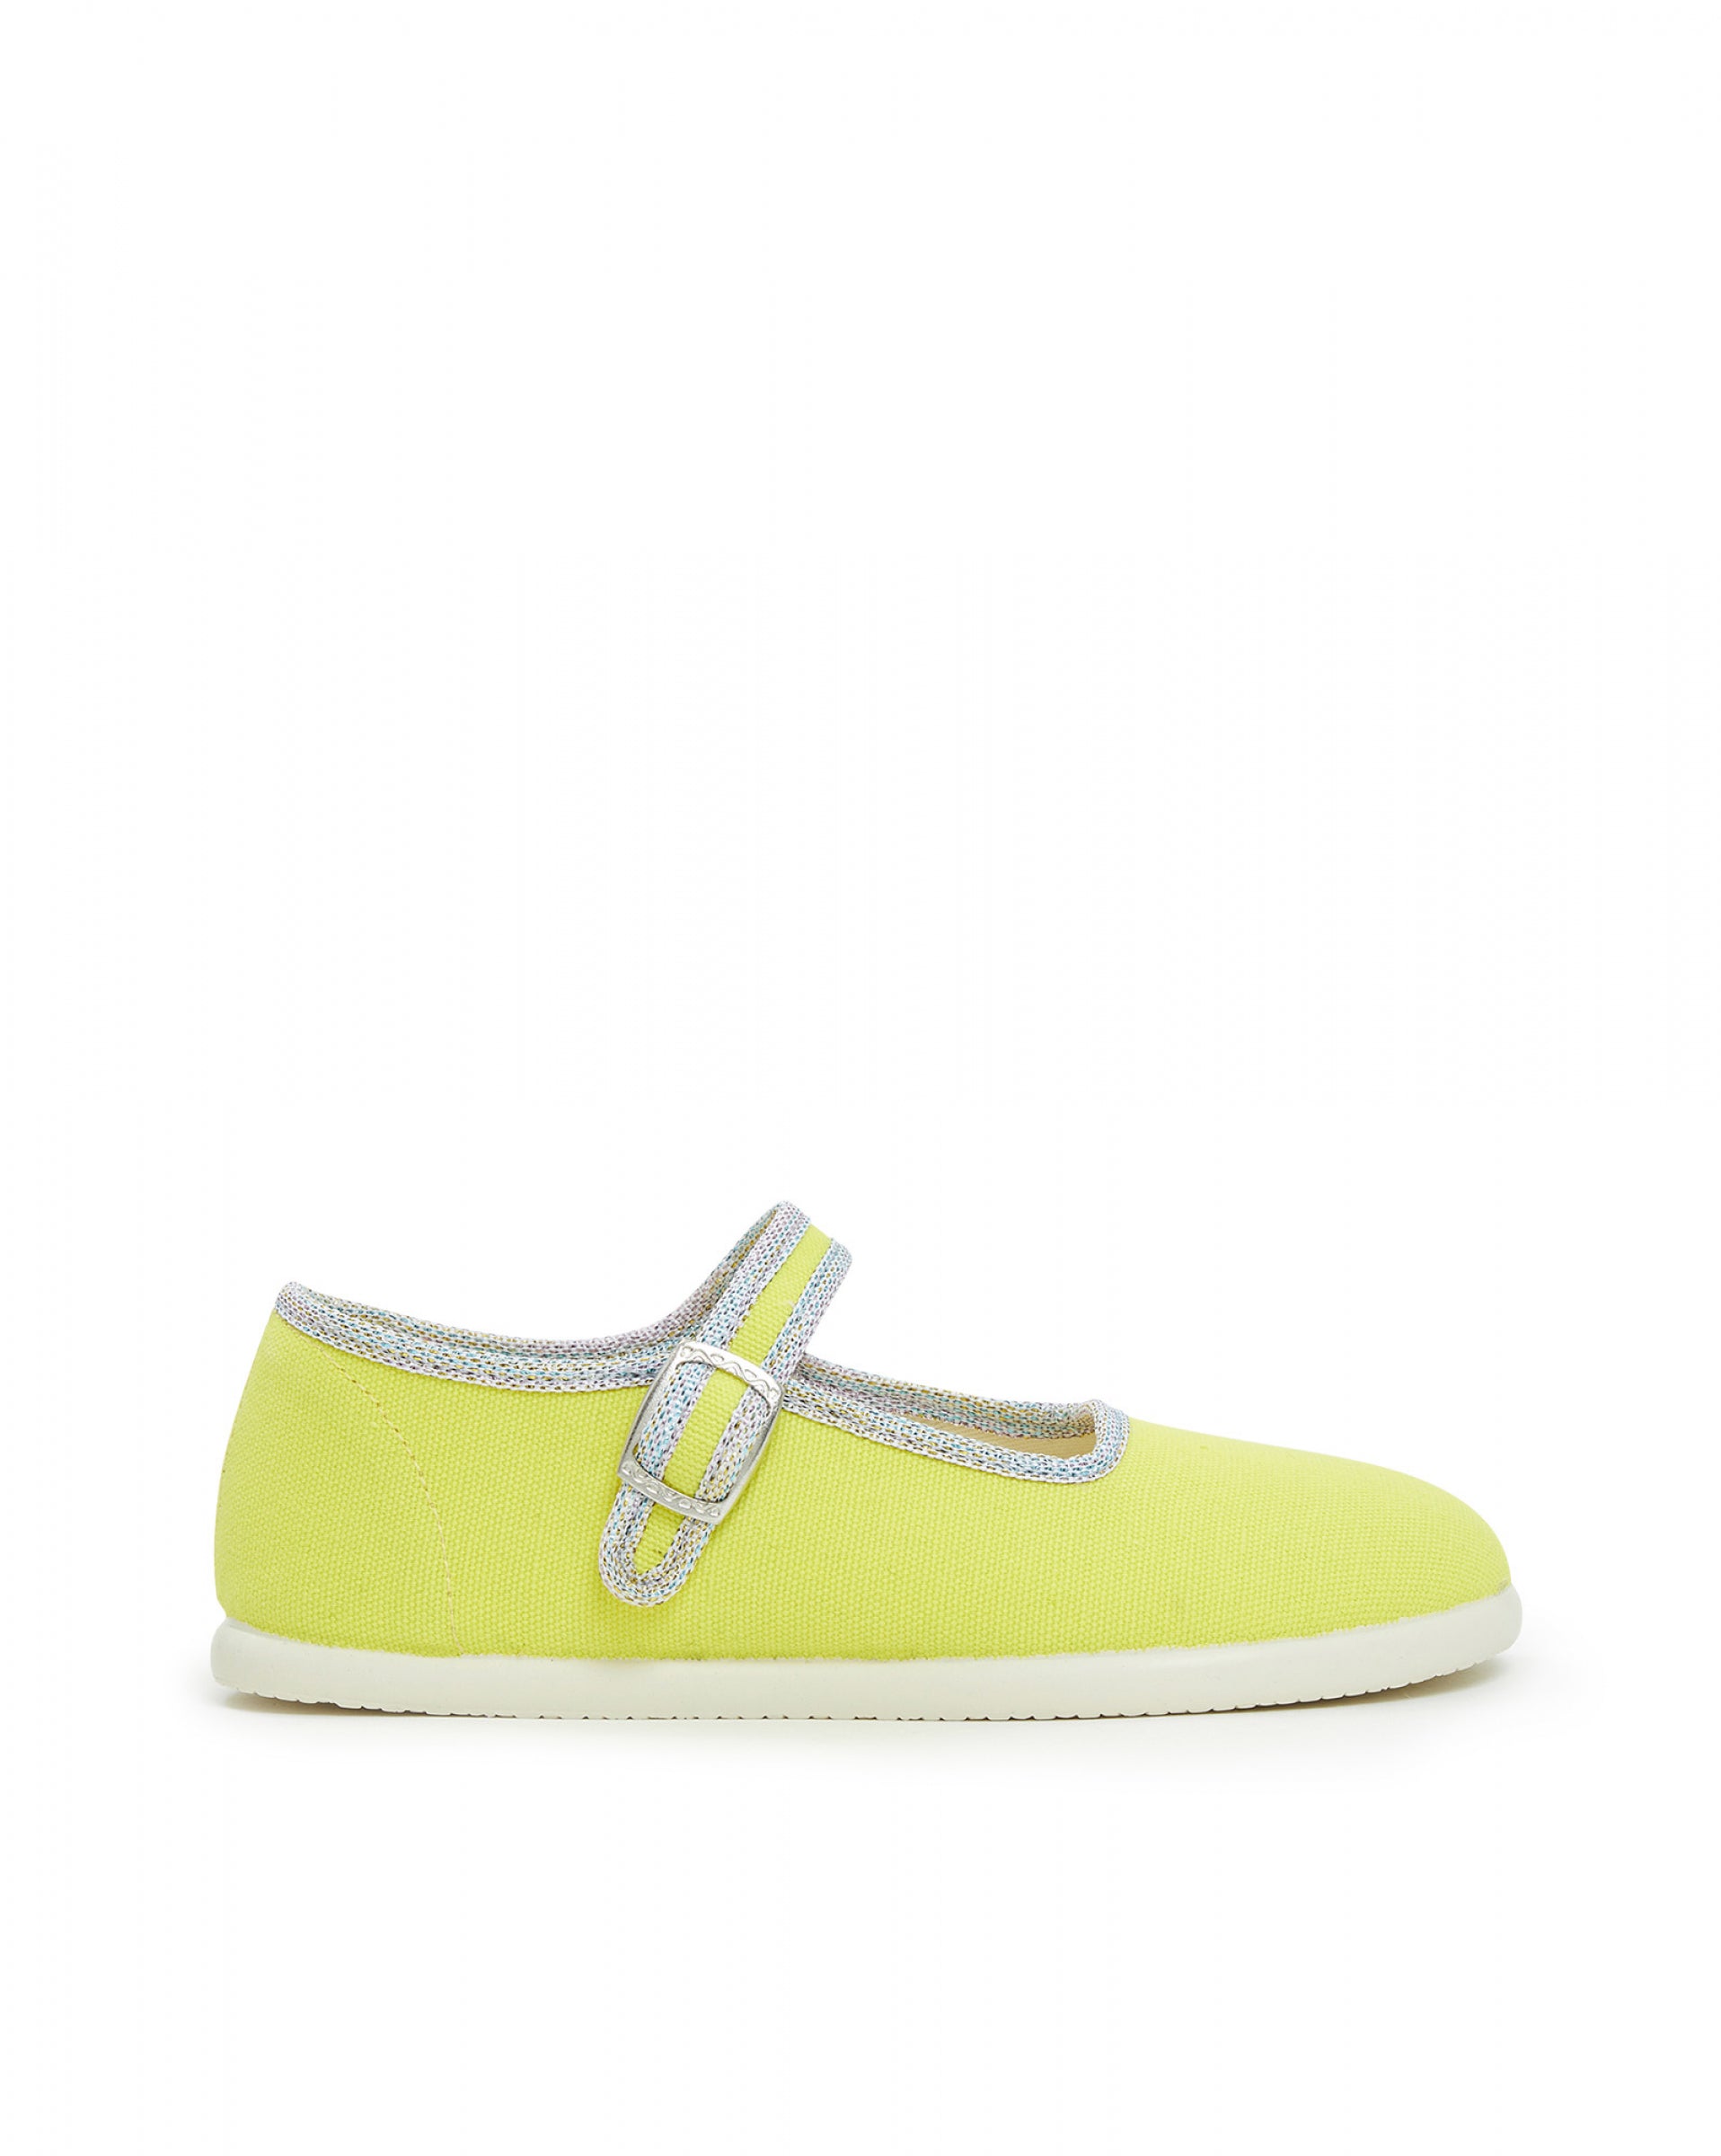 Girls Yellow Flat Shoes